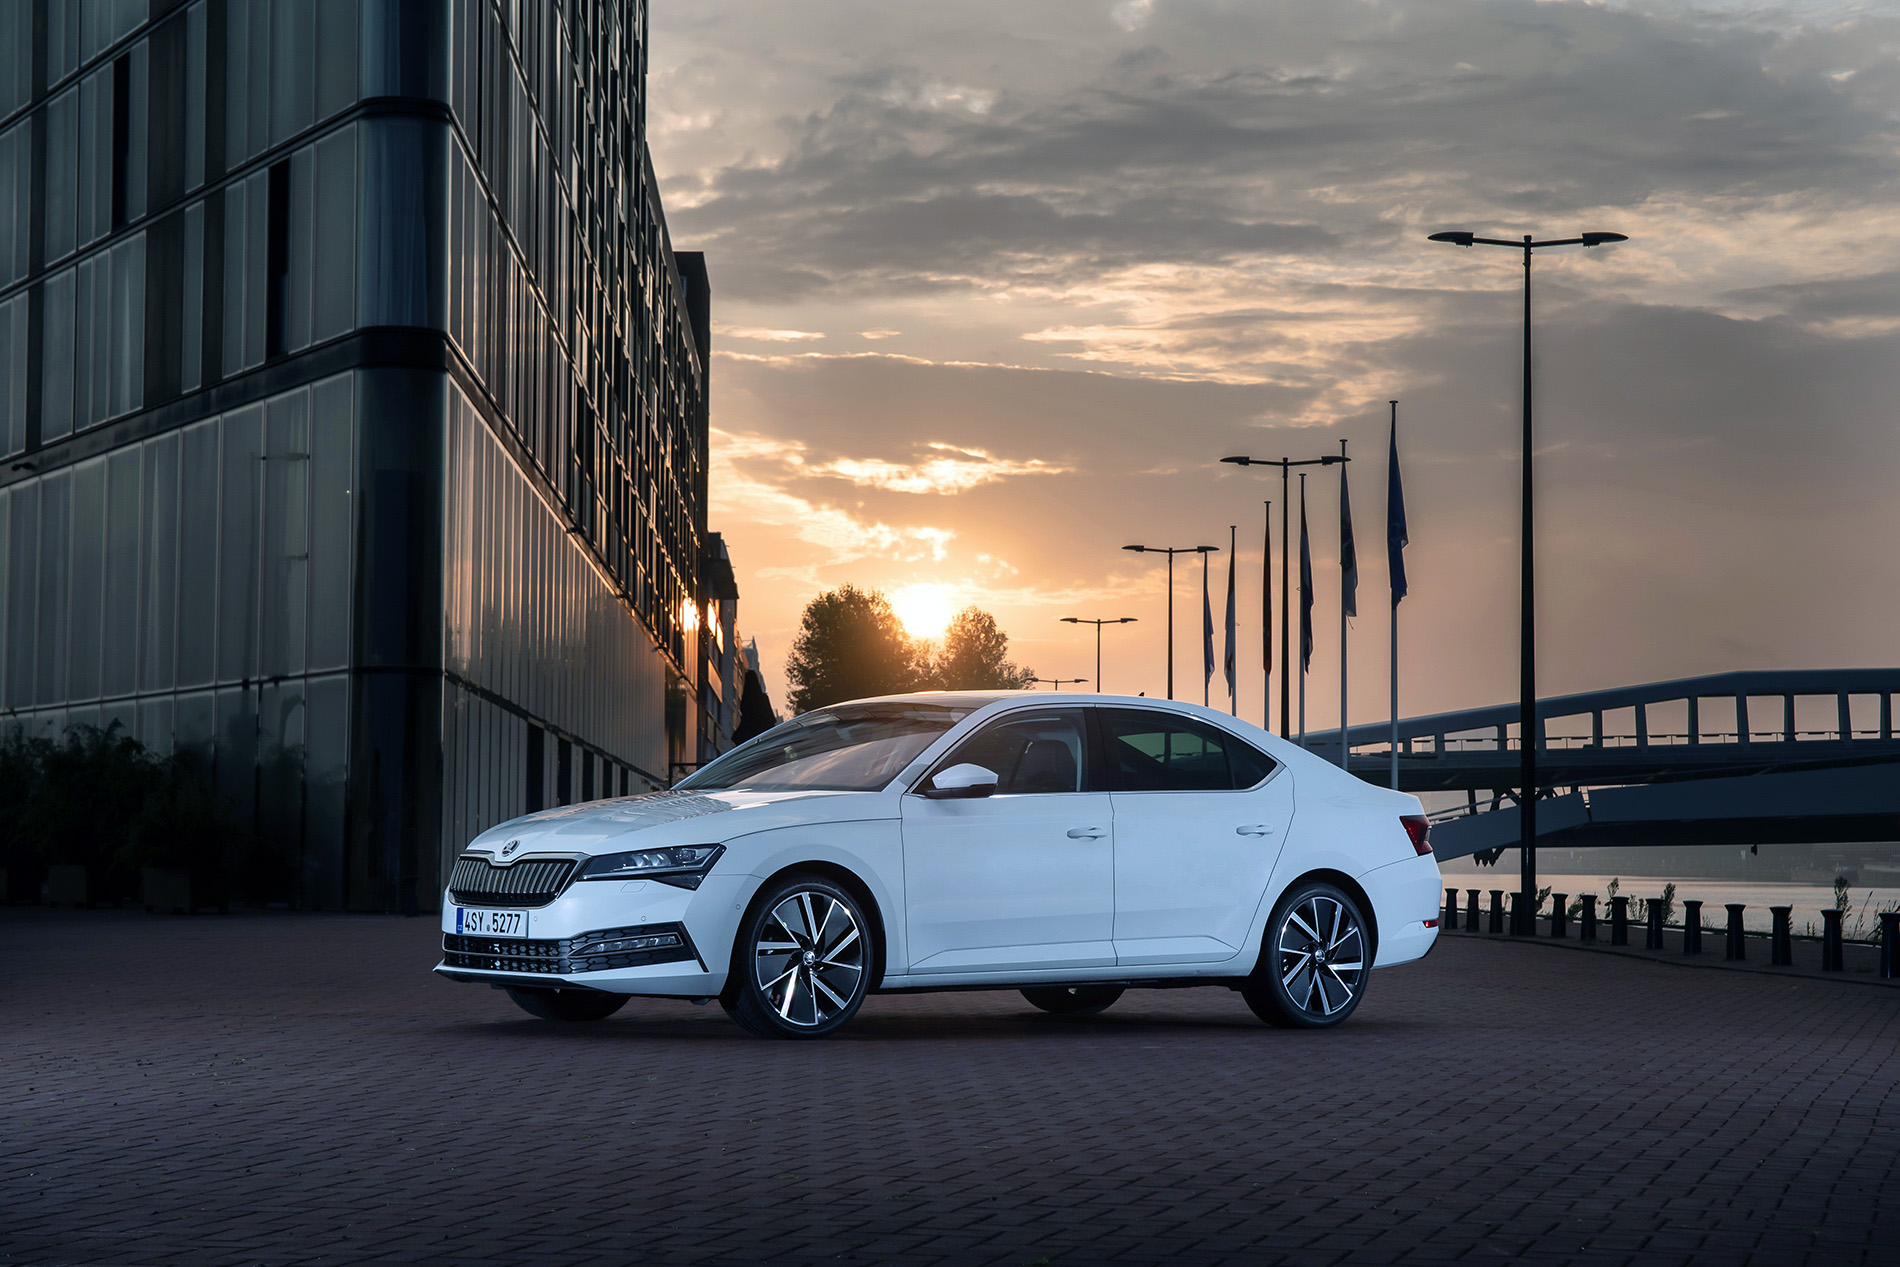 Škoda prezentuje strategię działania opartą na zrównoważonej mobilności